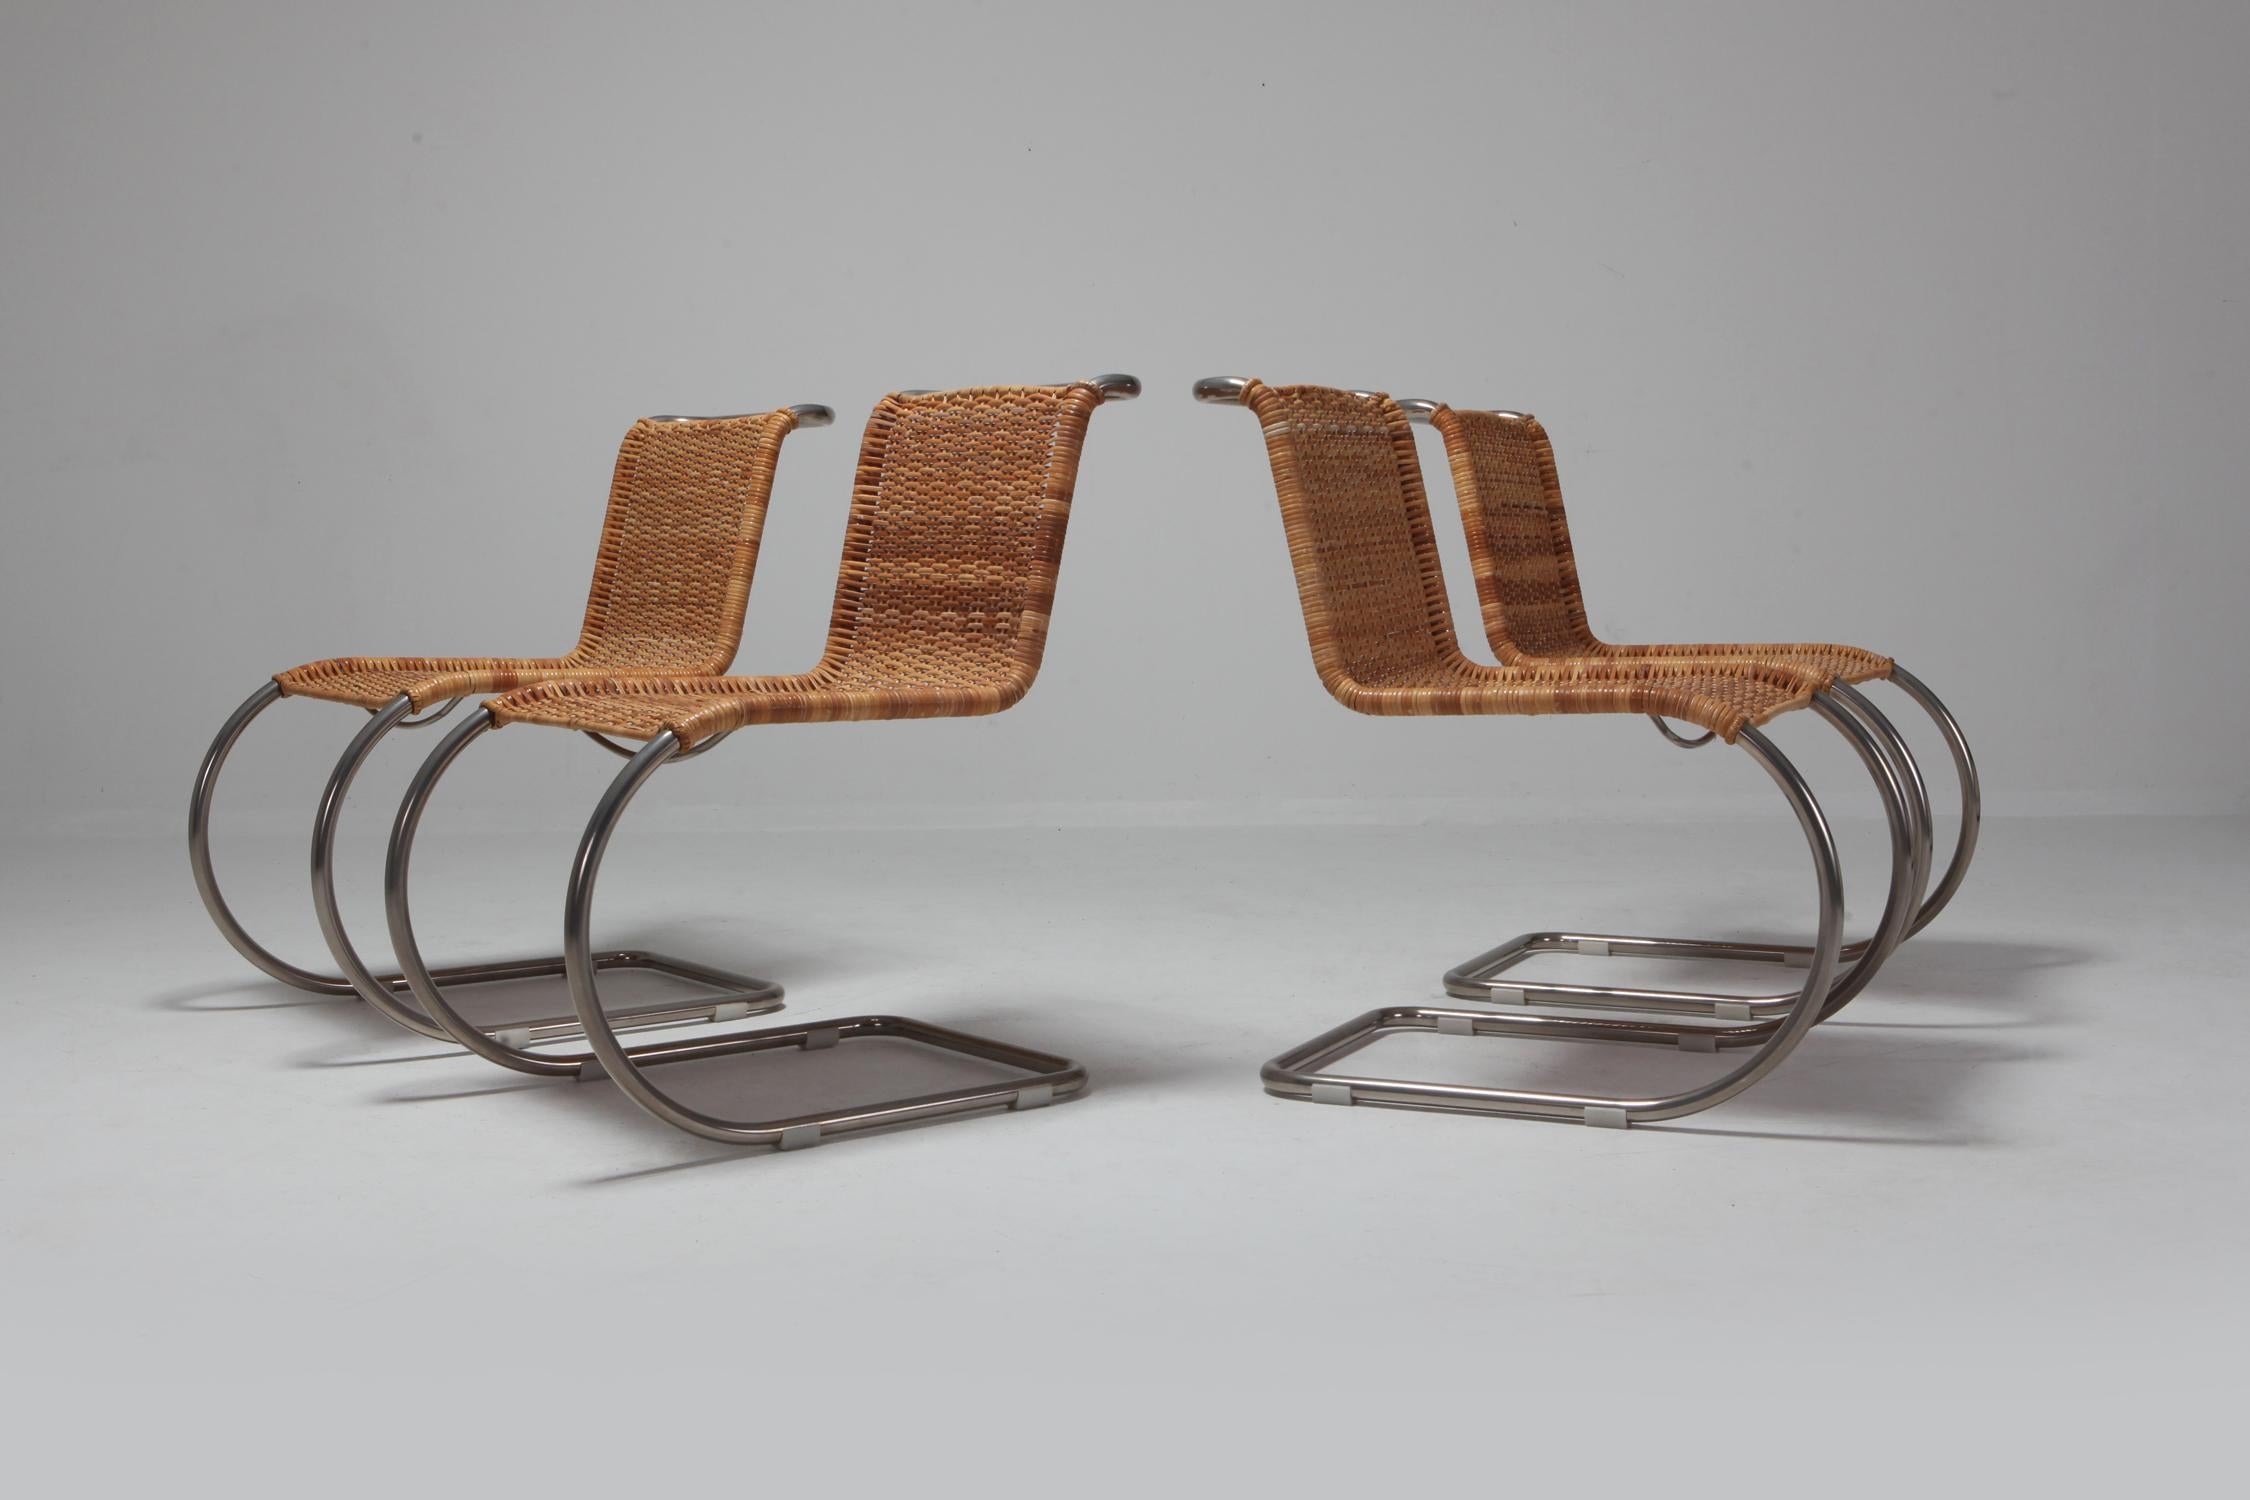 European Bauhaus B42 Chair by Mies van der Rohe for Tecta